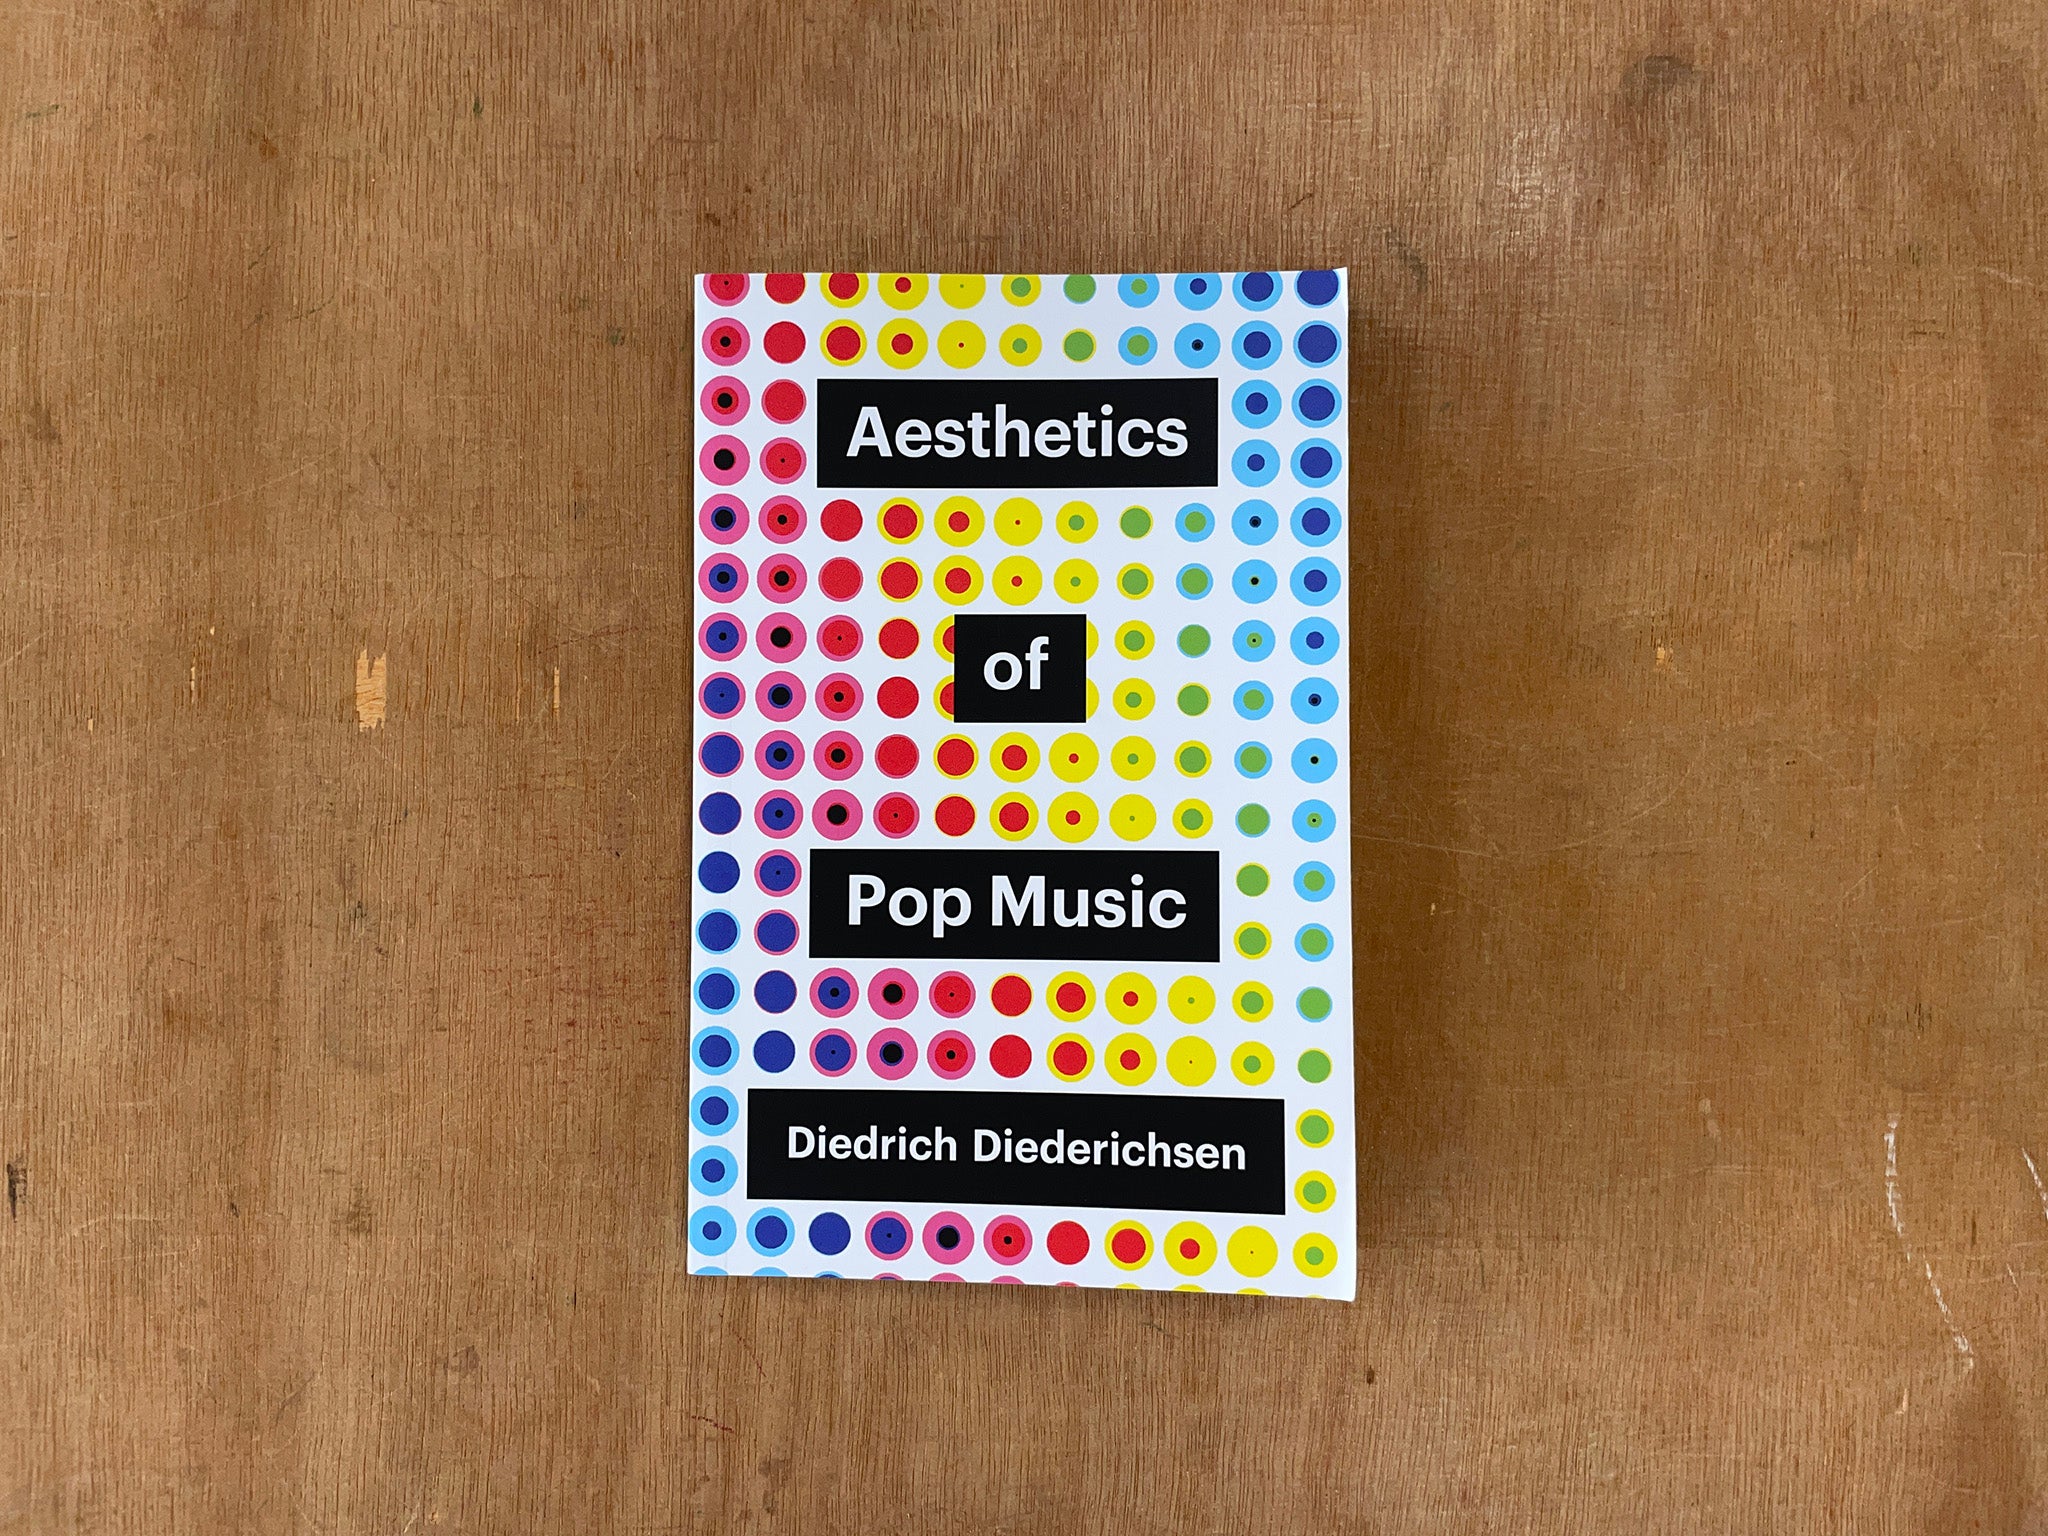 AESTHETICS OF POP MUSIC by Diedrich Diederichsen